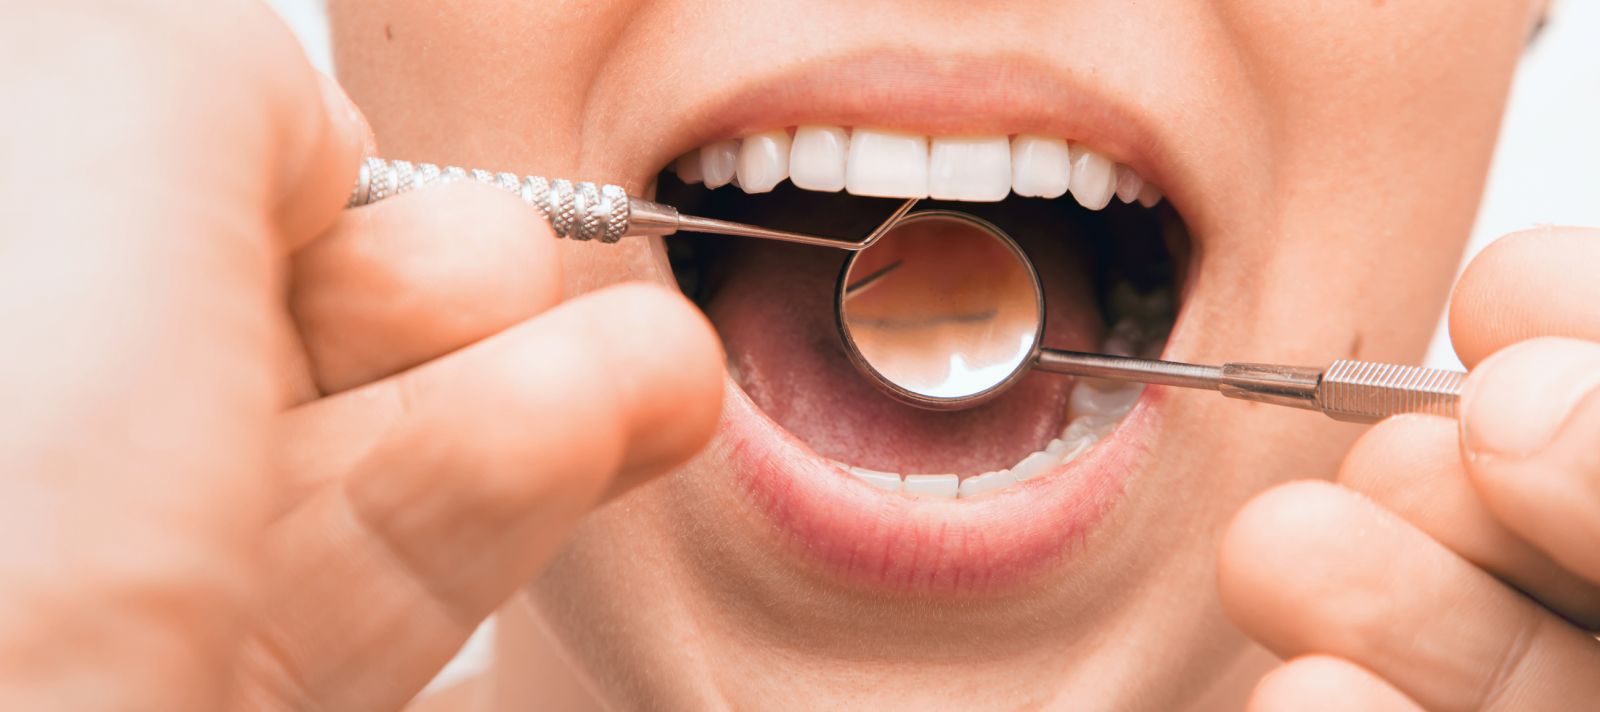 اختلالات شایع دهان در سالمندان